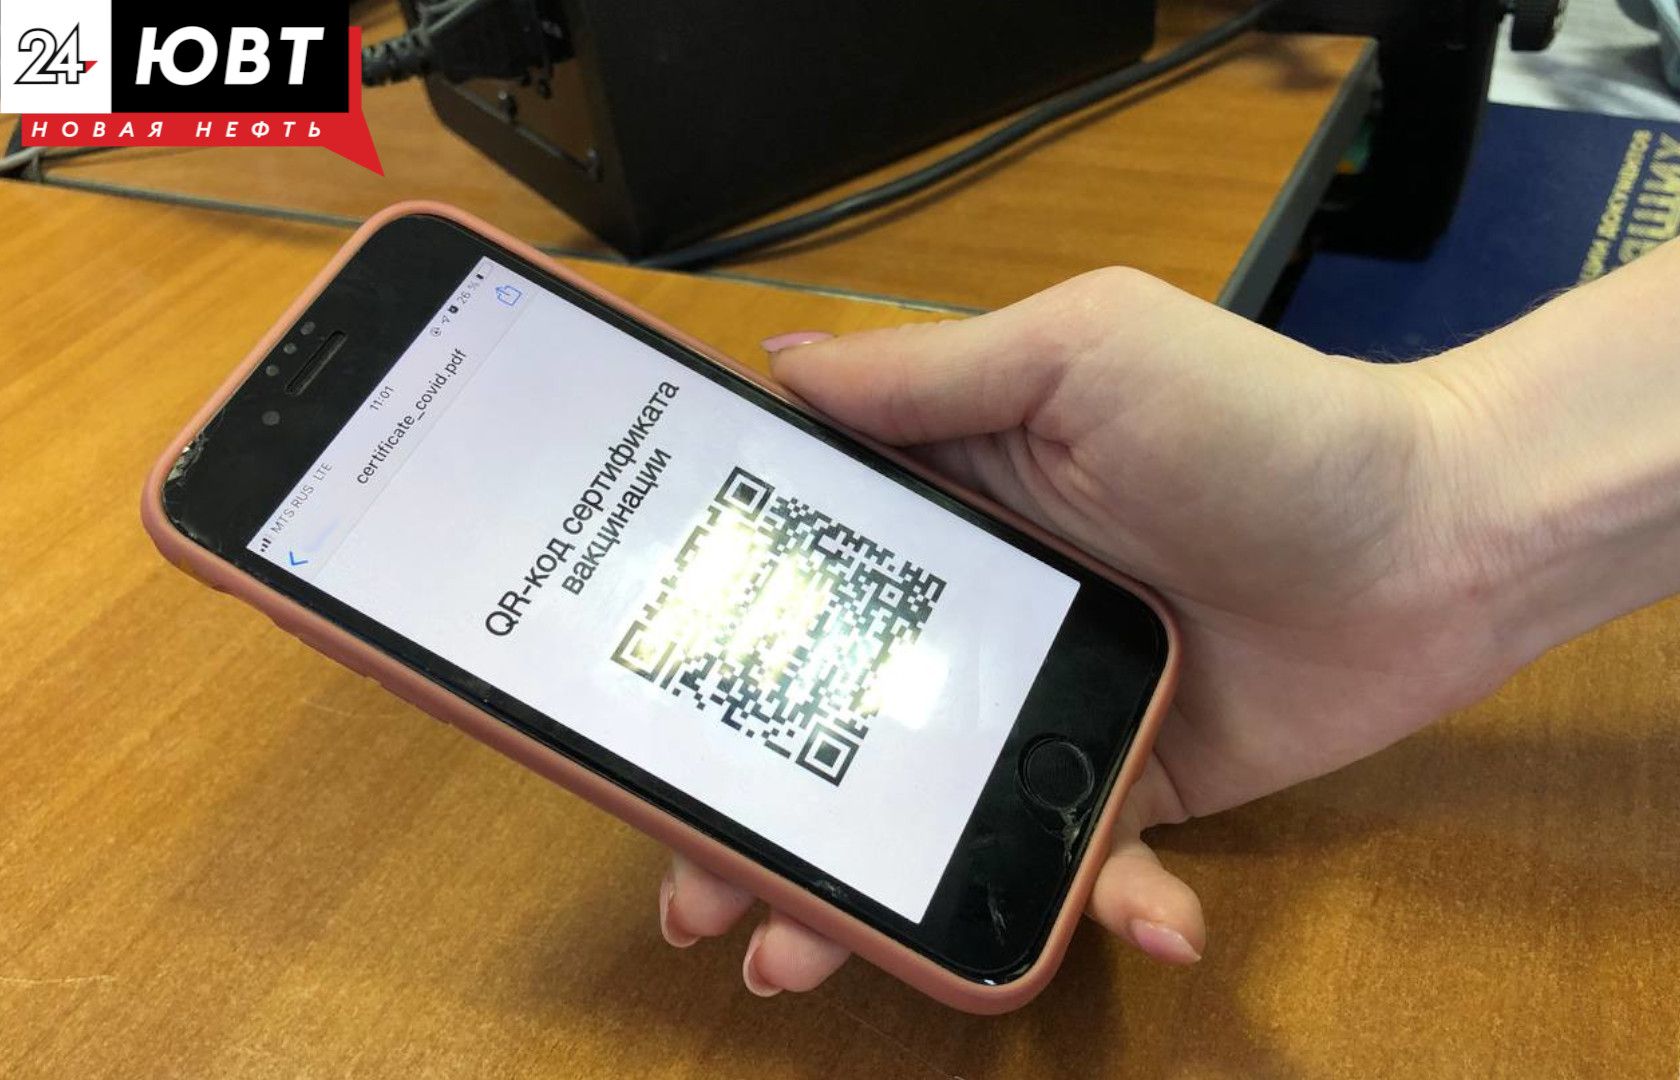 Татарстанцев с 1 марта начнет обзванивать робот для приглашения на диспансеризацию